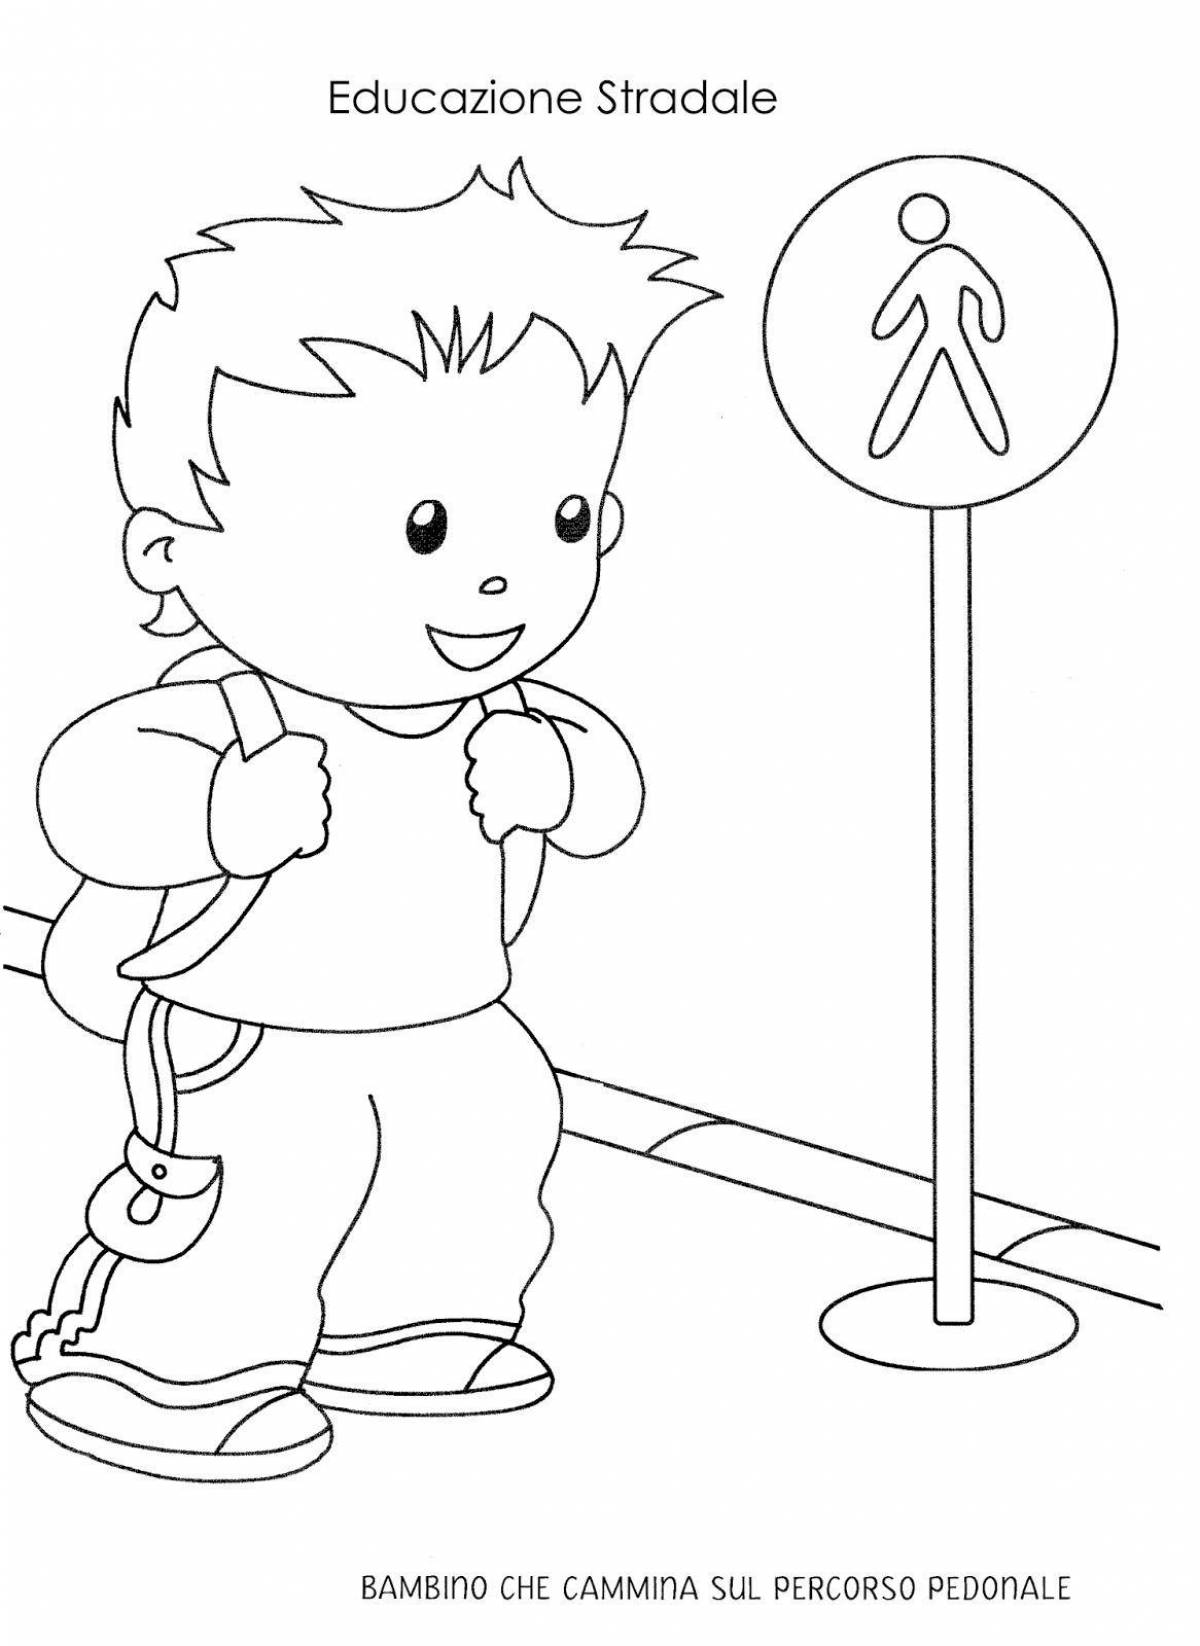 On ABC Preschool Safety #8